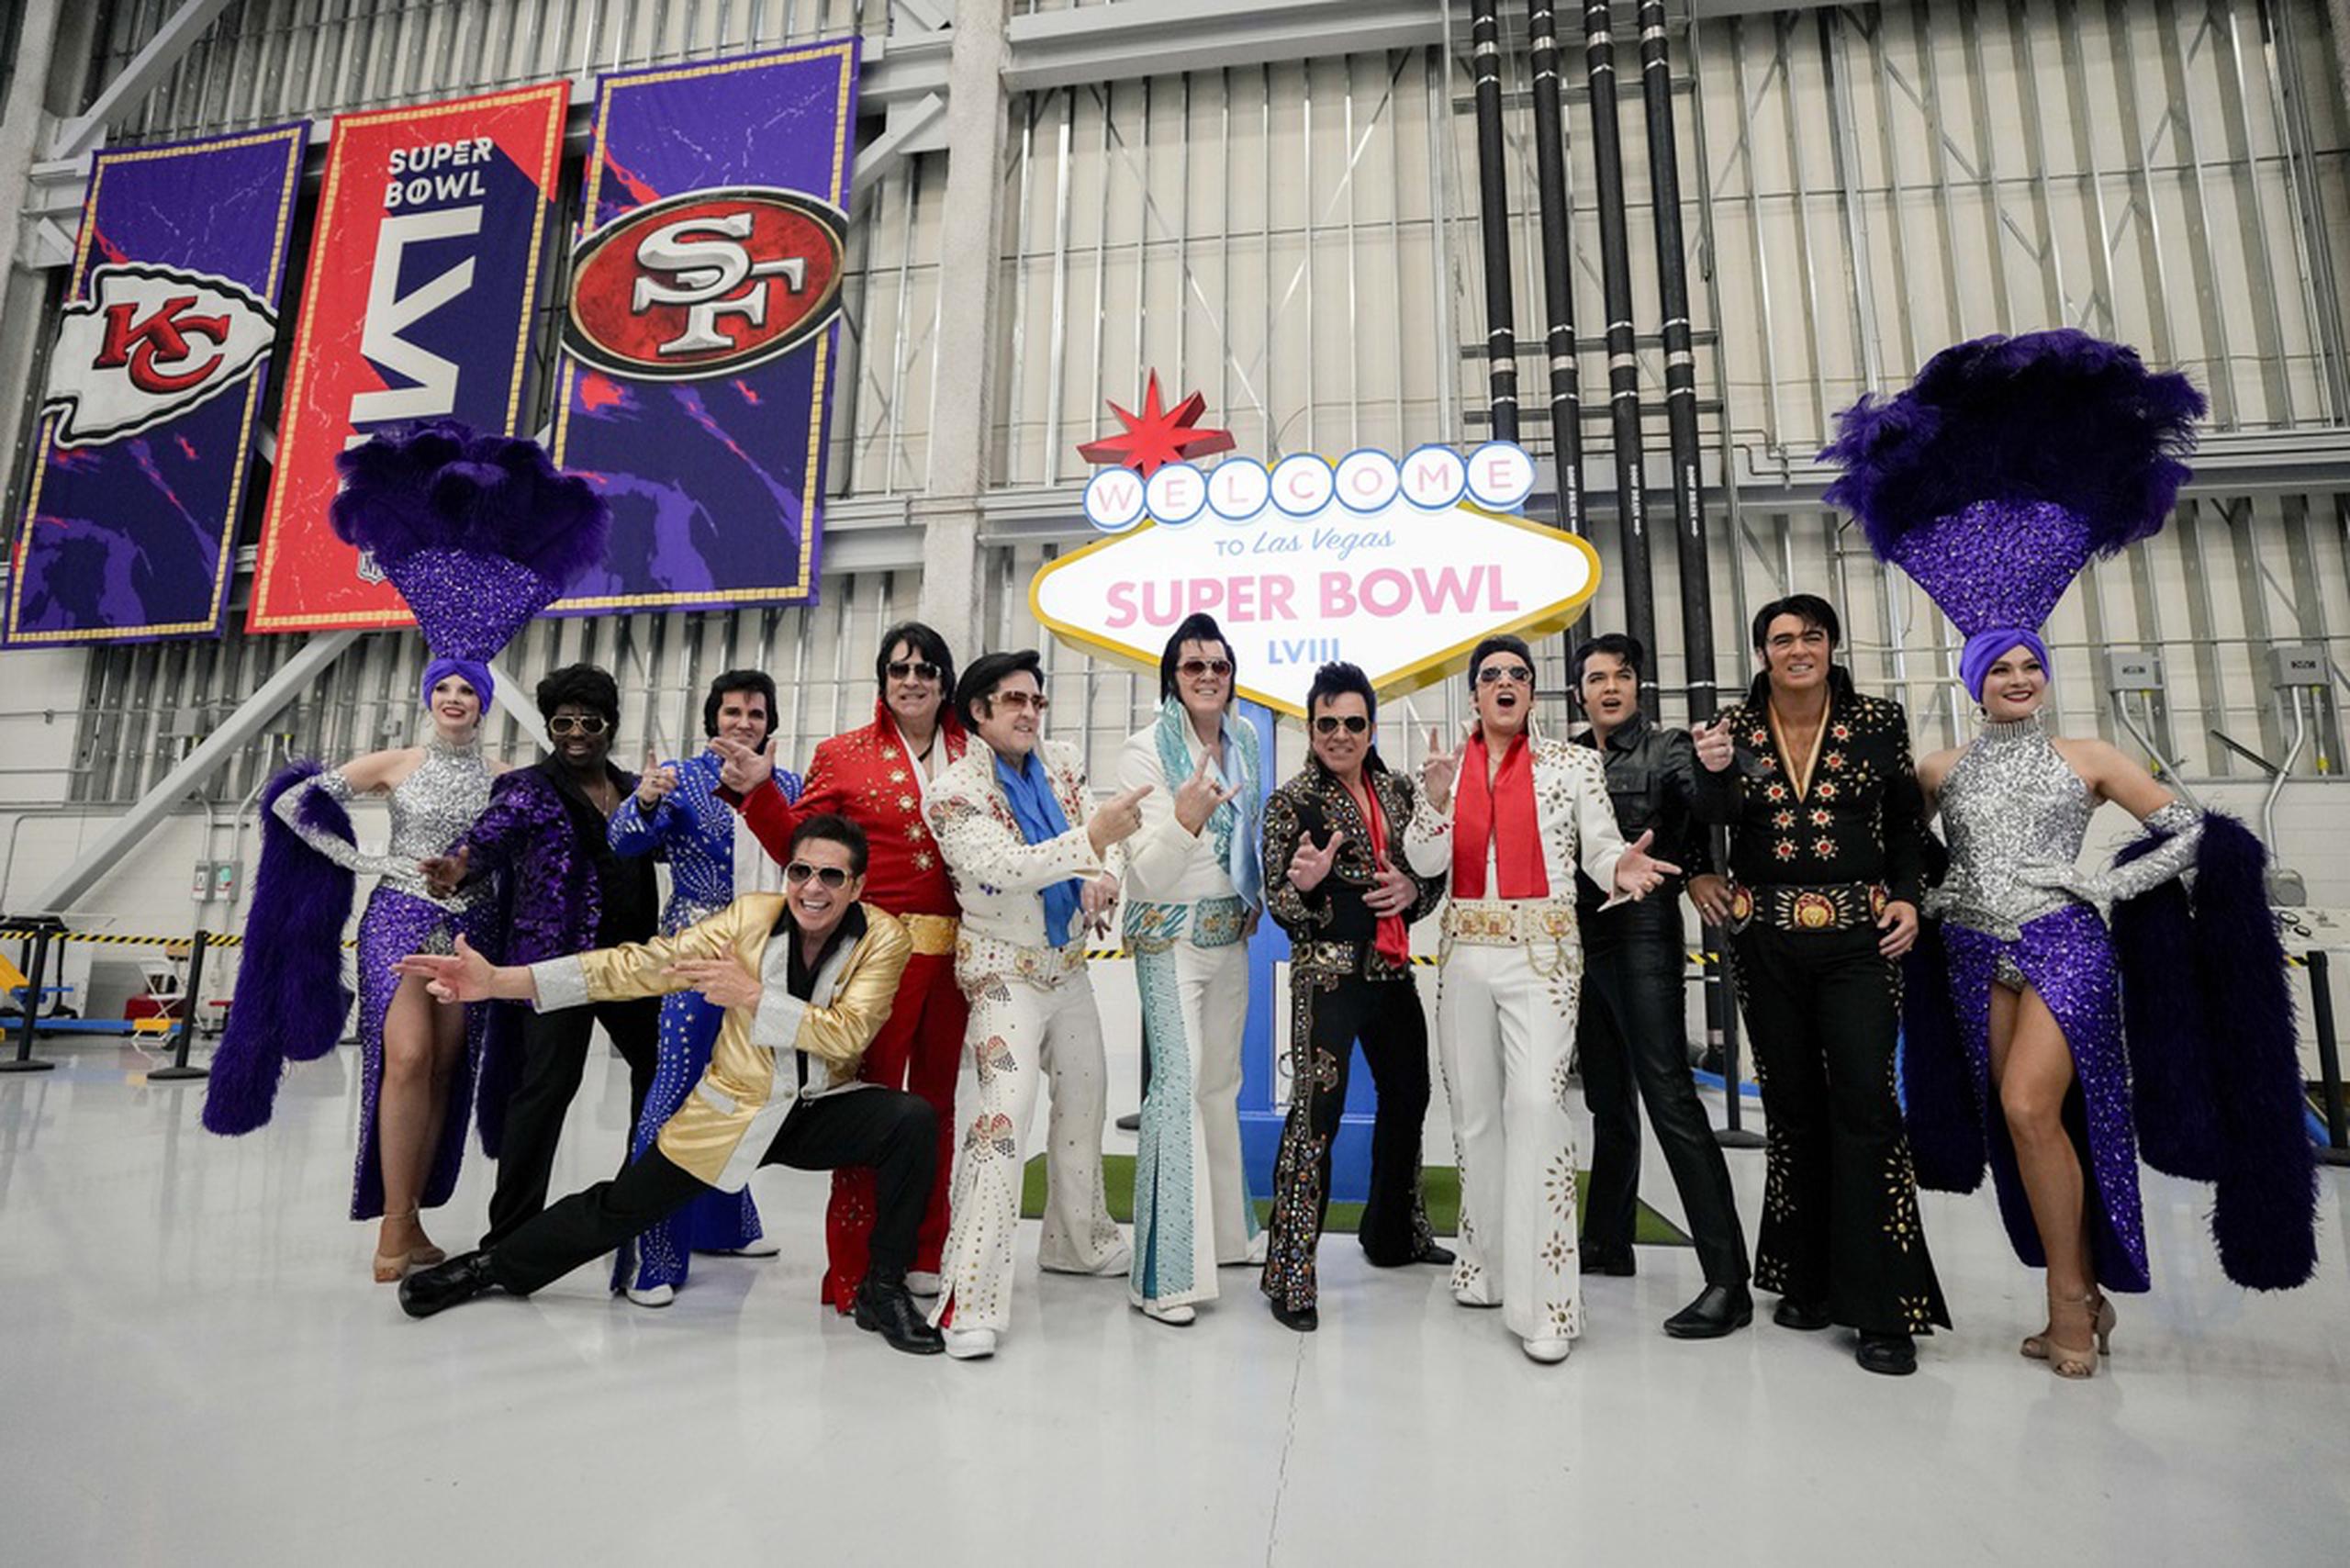 Imitadores de Elvis Presley previo al arribo de los equipos con miras al Super Bowl 58 entre los 49ers de San Francisco y los Chiefs de Kansas City.